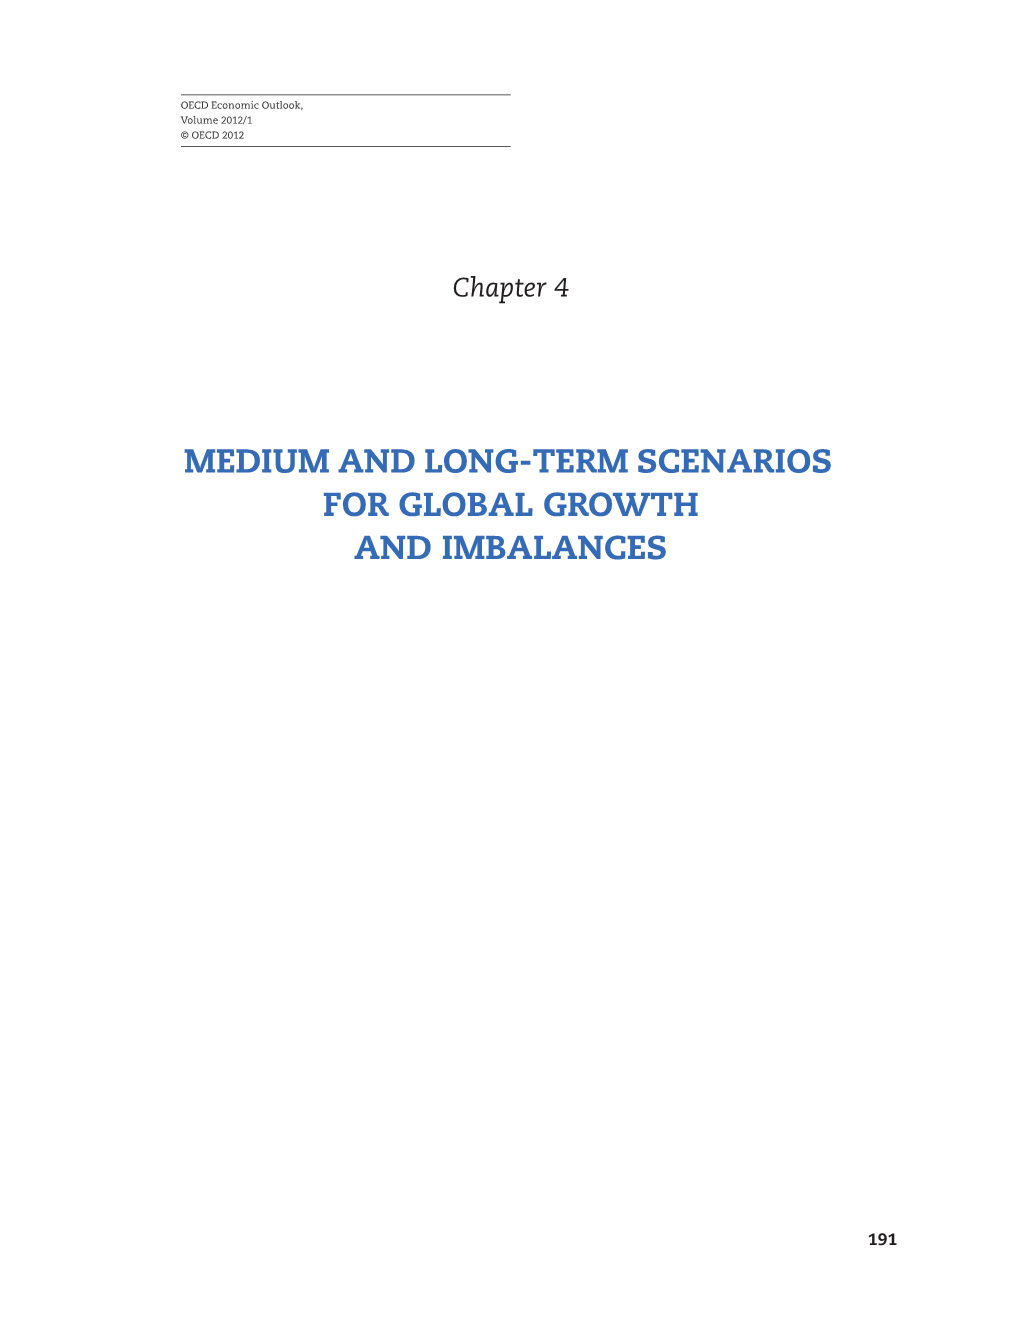 Medium and Long-Term Scenarios for Global Growth and Imbalances